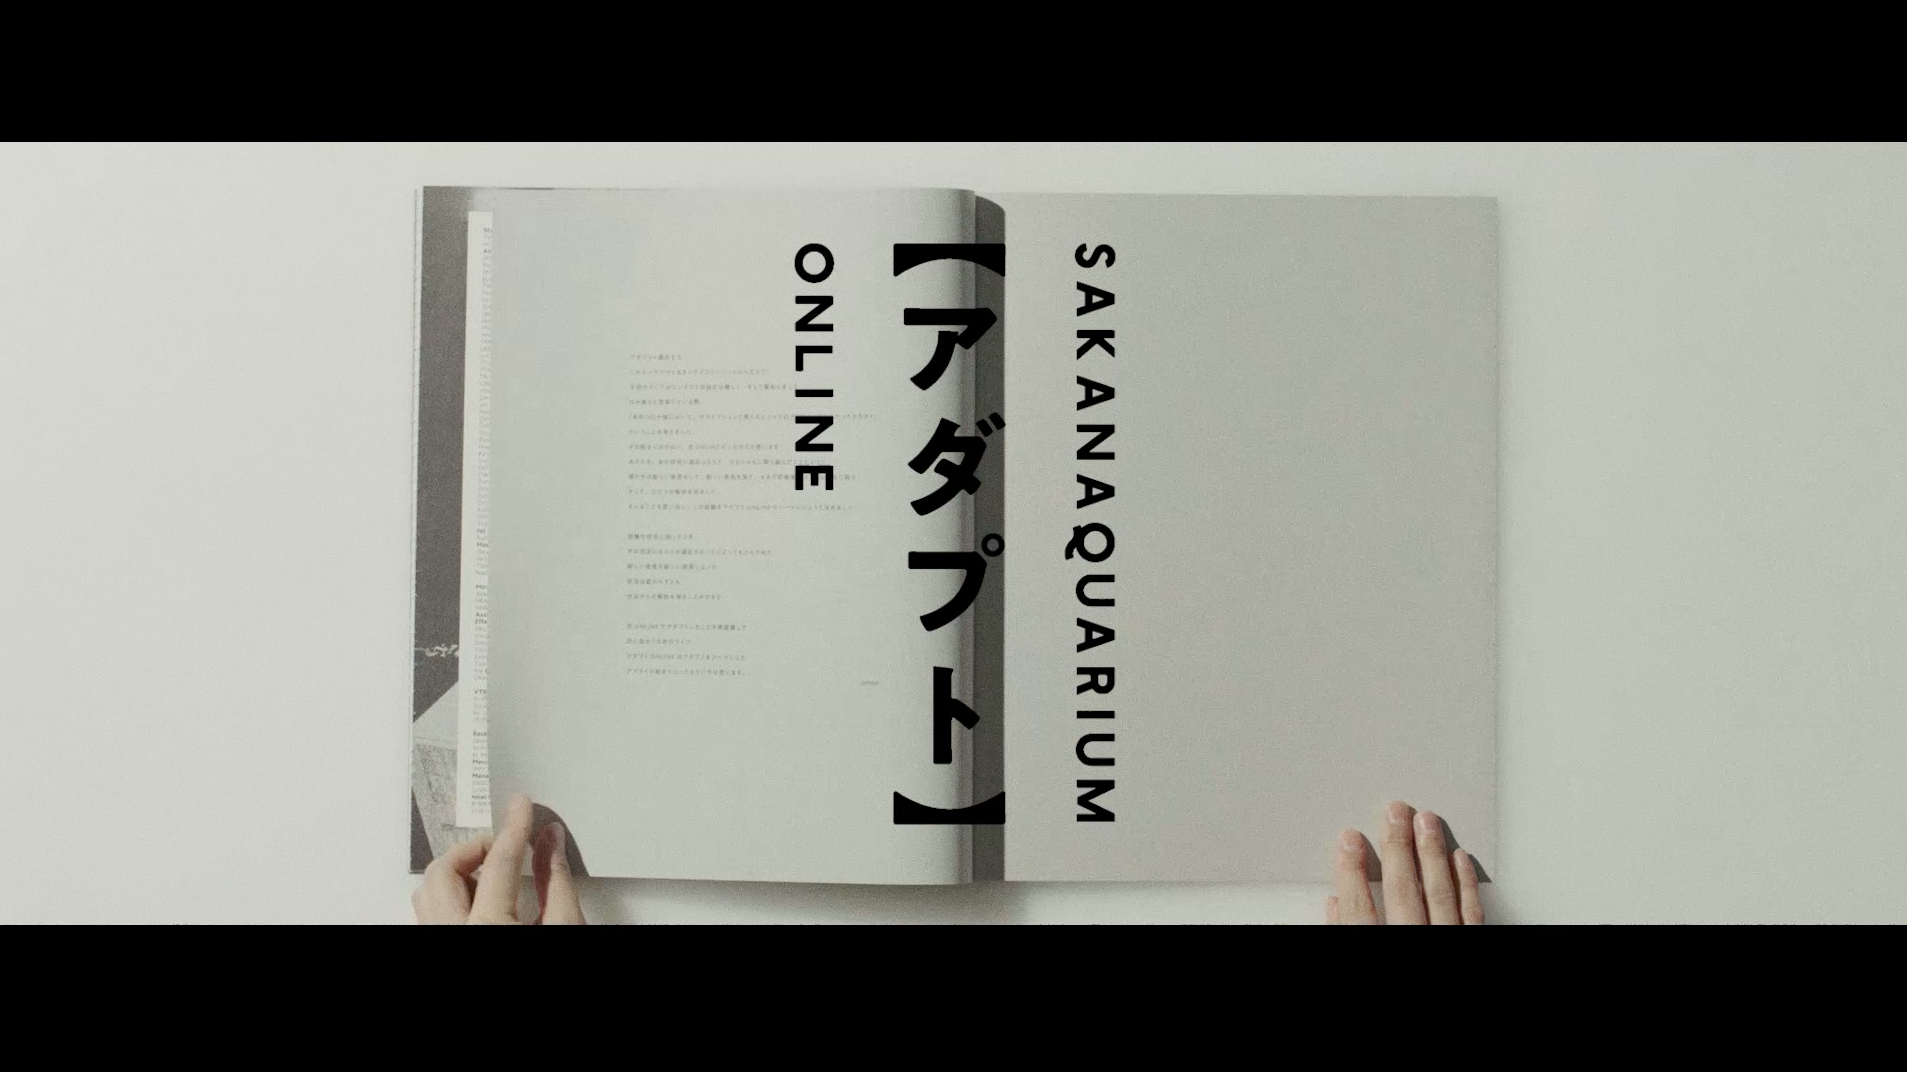 Blu-ray&DVD「SAKANAQUARIUM アダプト ONLINE」